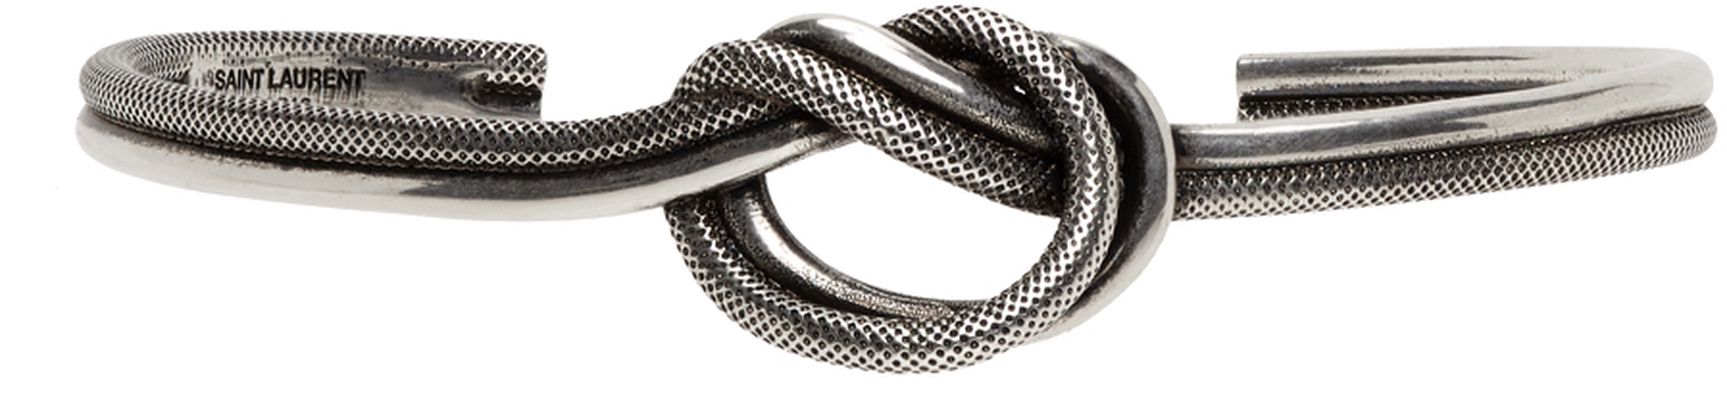 Saint Laurent Silver Knot Cuff Bracelet